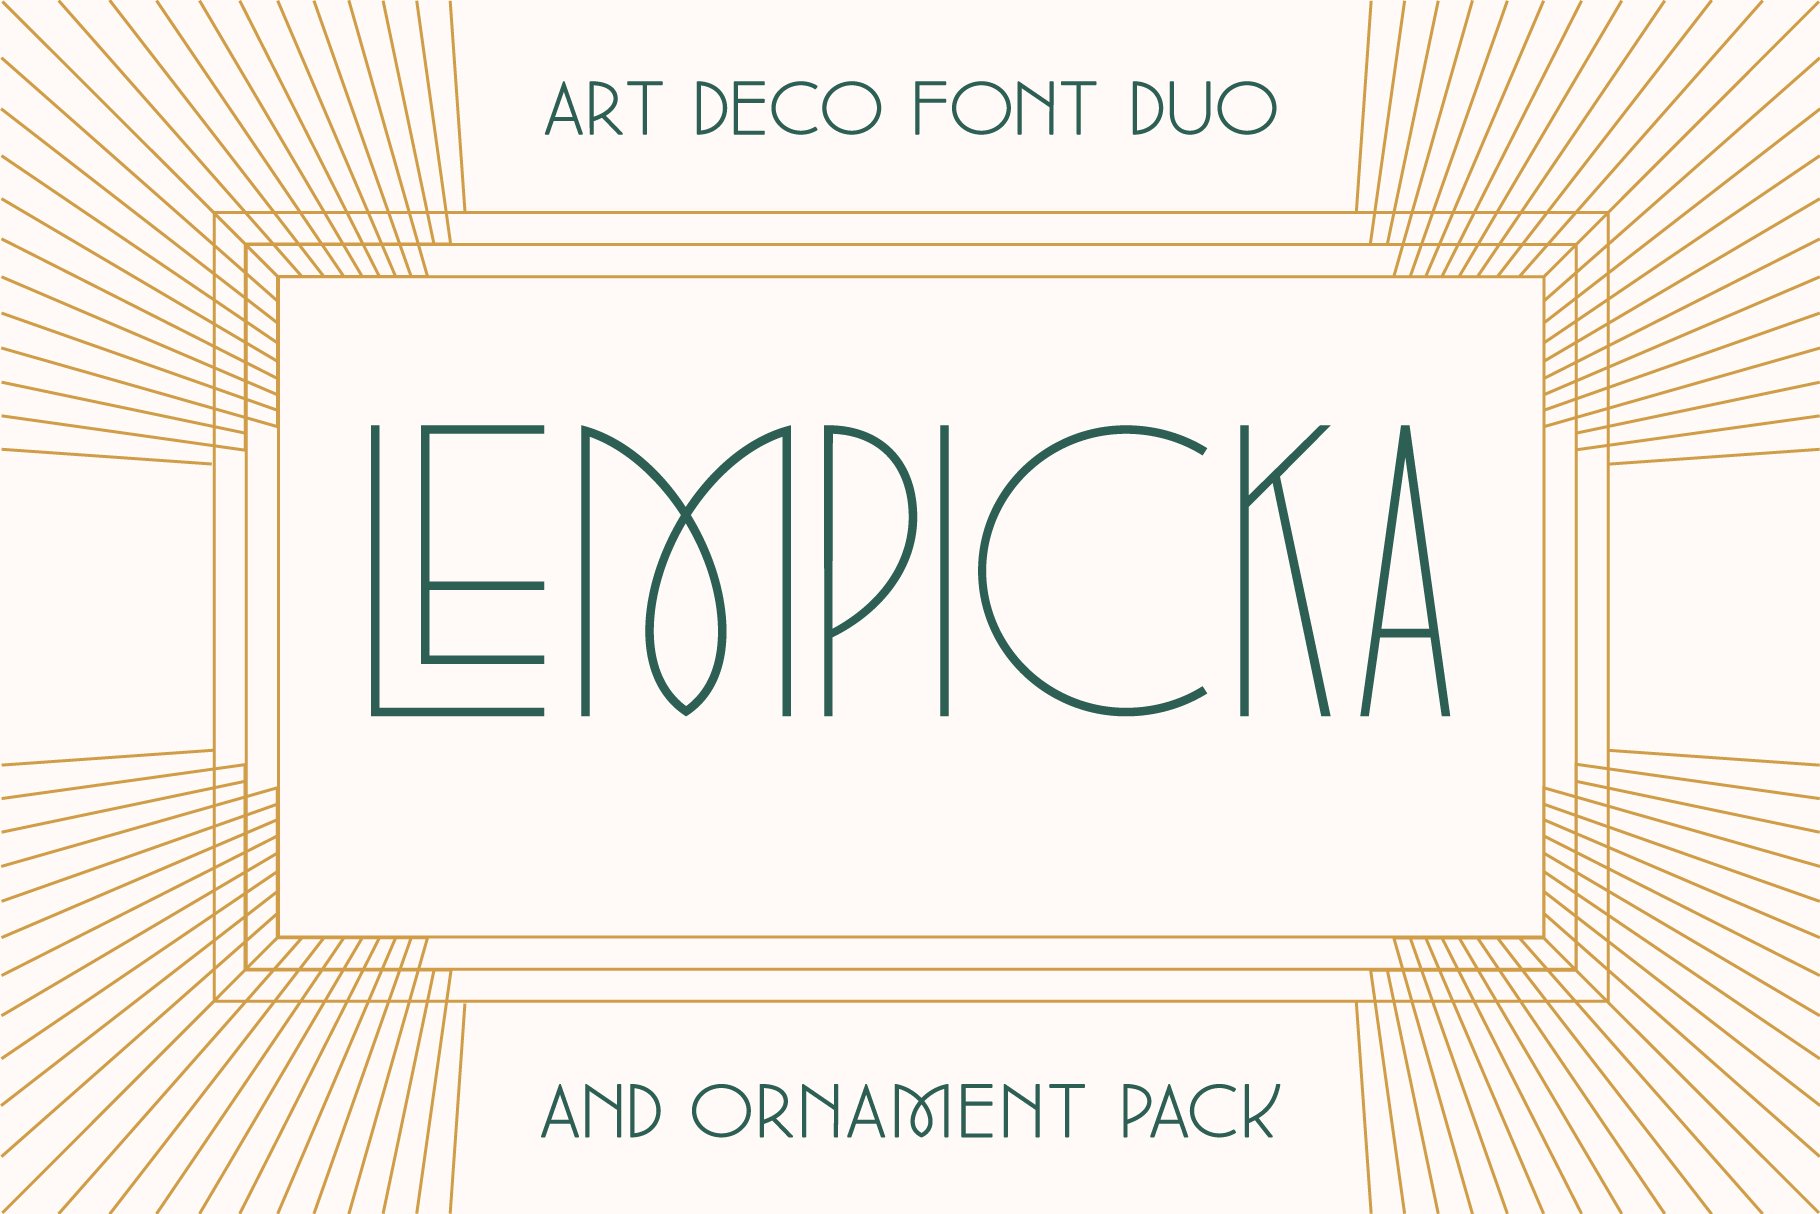 Lempicka Font Duo & Vector Ornaments cover image.